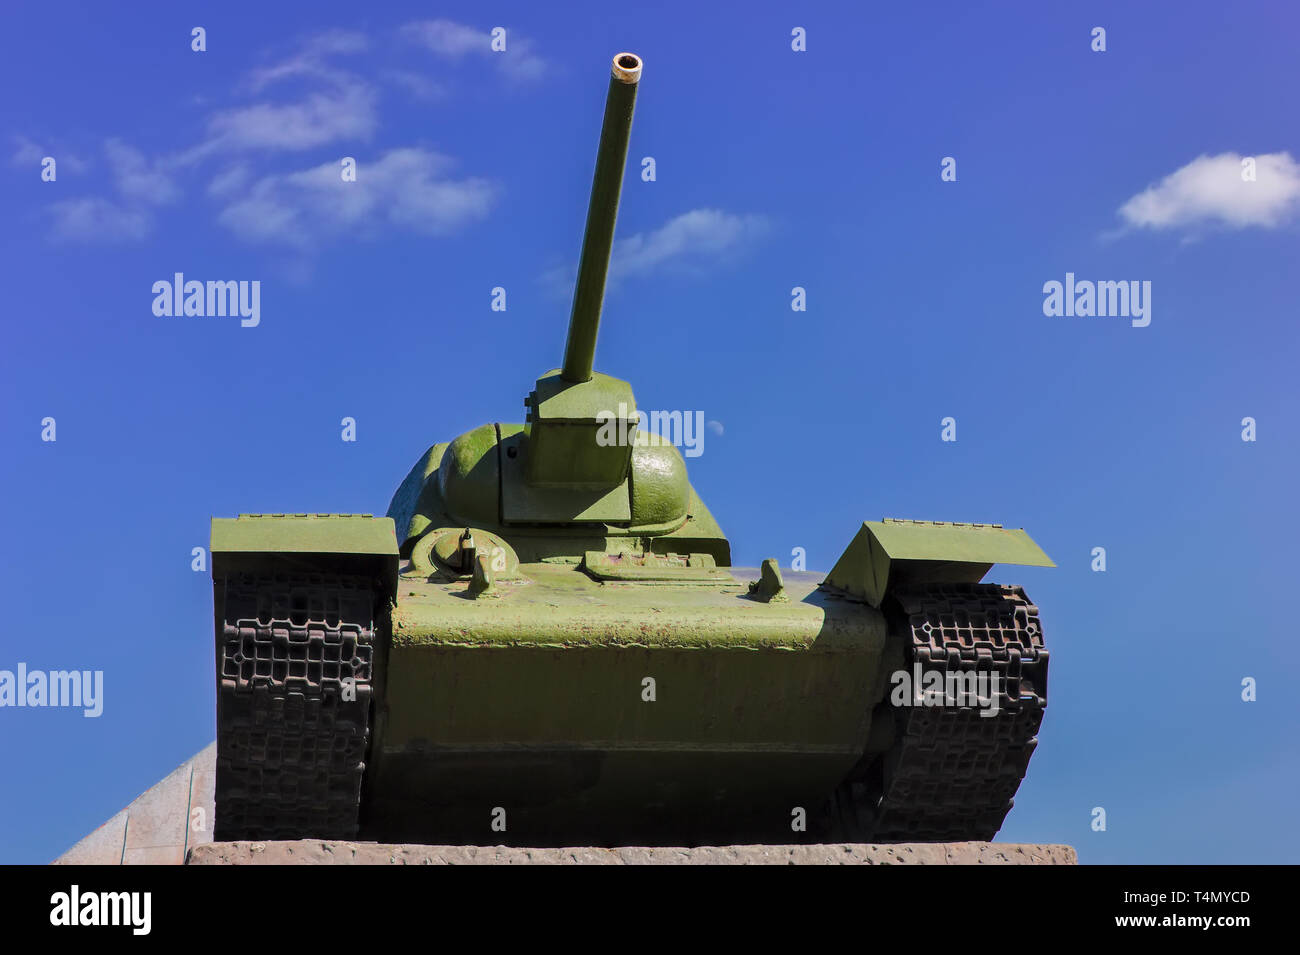 Sowjetischer Panzer T-34 im Krieg im zweiten Weltkrieg auf dem Hintergrund des blauen Himmels. Stockfoto